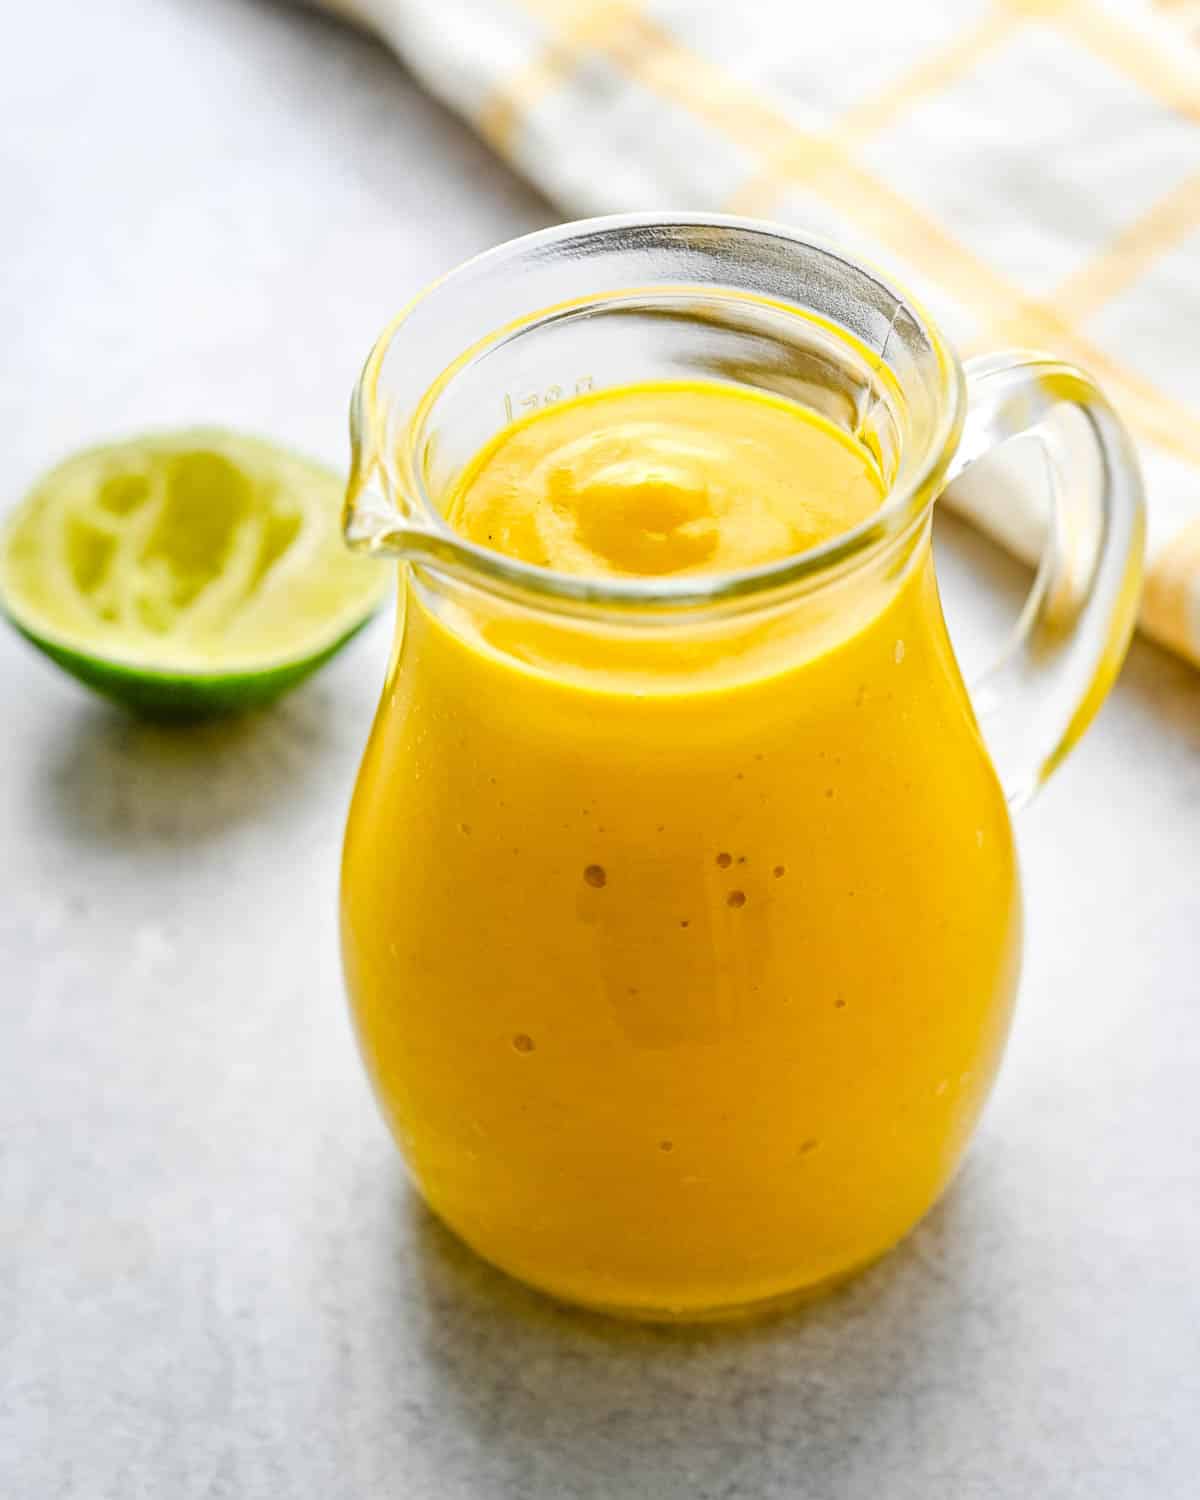 A jar of curried mango salad dressing.